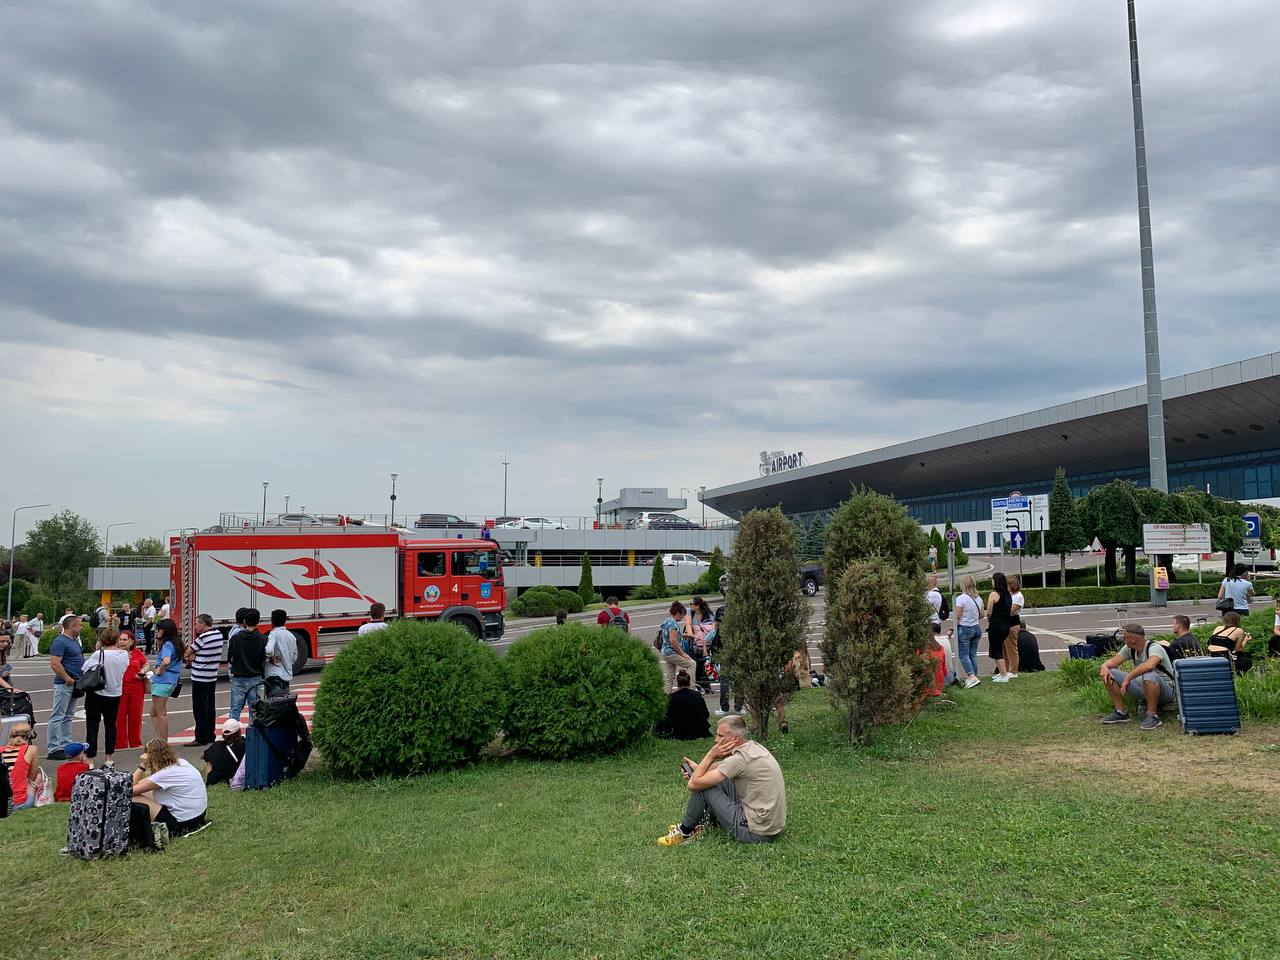 (ФОТО) В Кишиневском аэропорту новое сообщение о бомбе